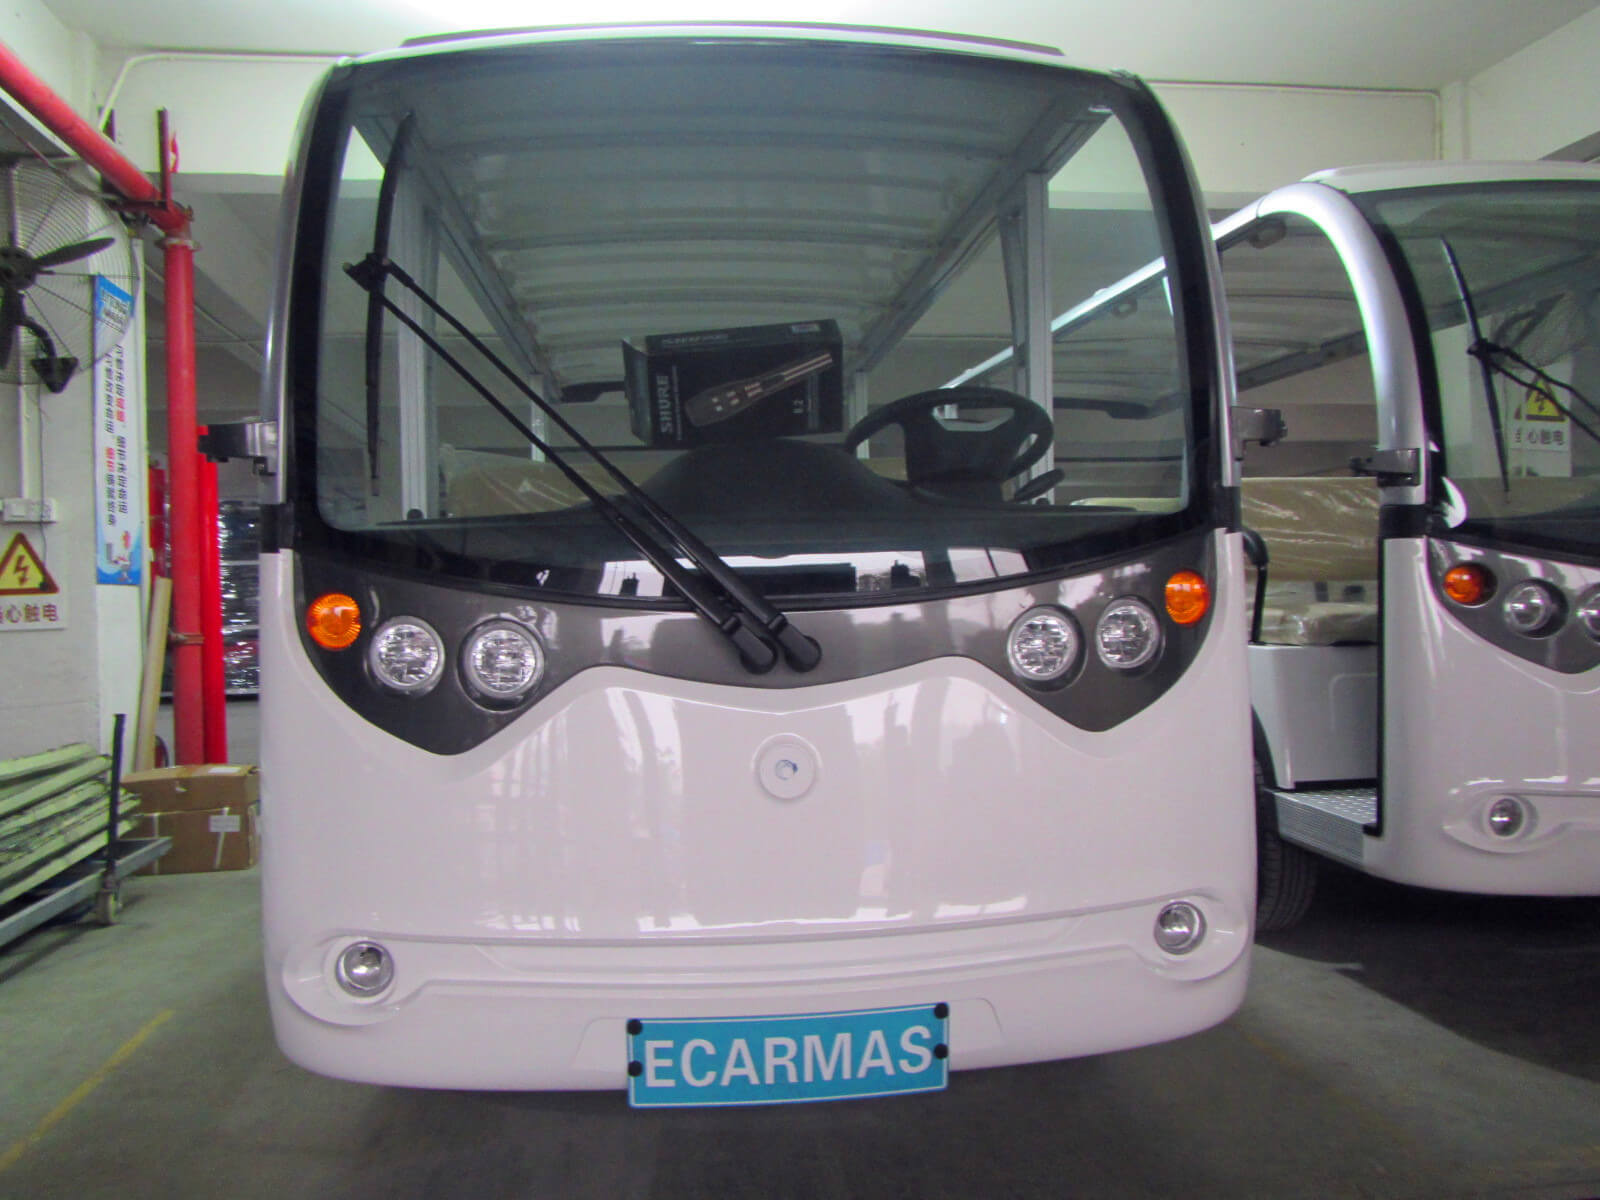 ECARMAS Mini Electric Car